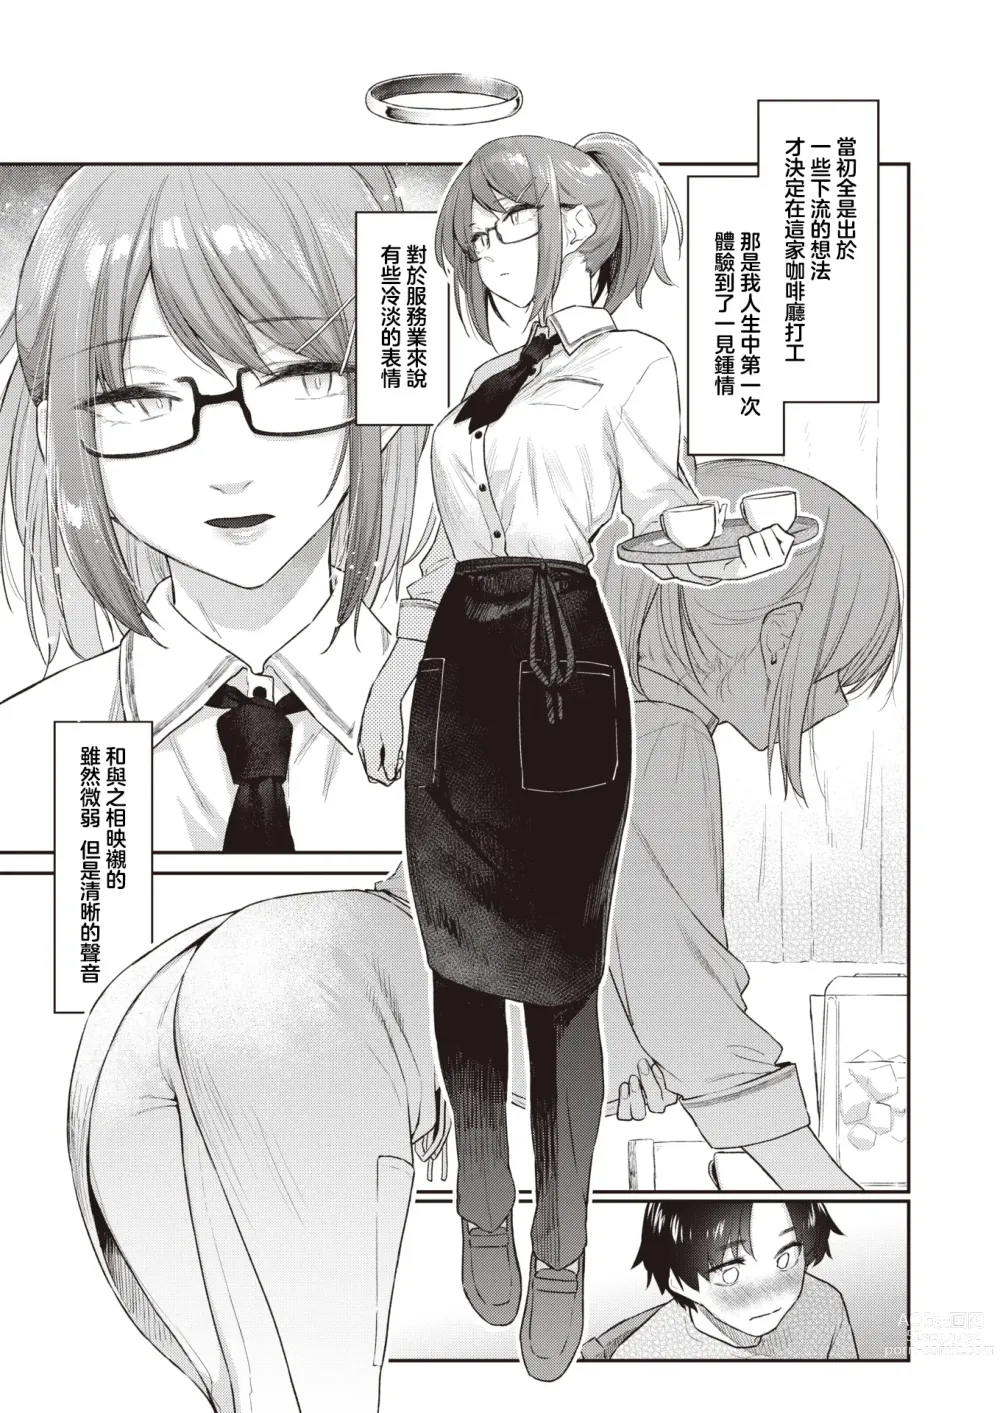 Page 4 of manga 绕道